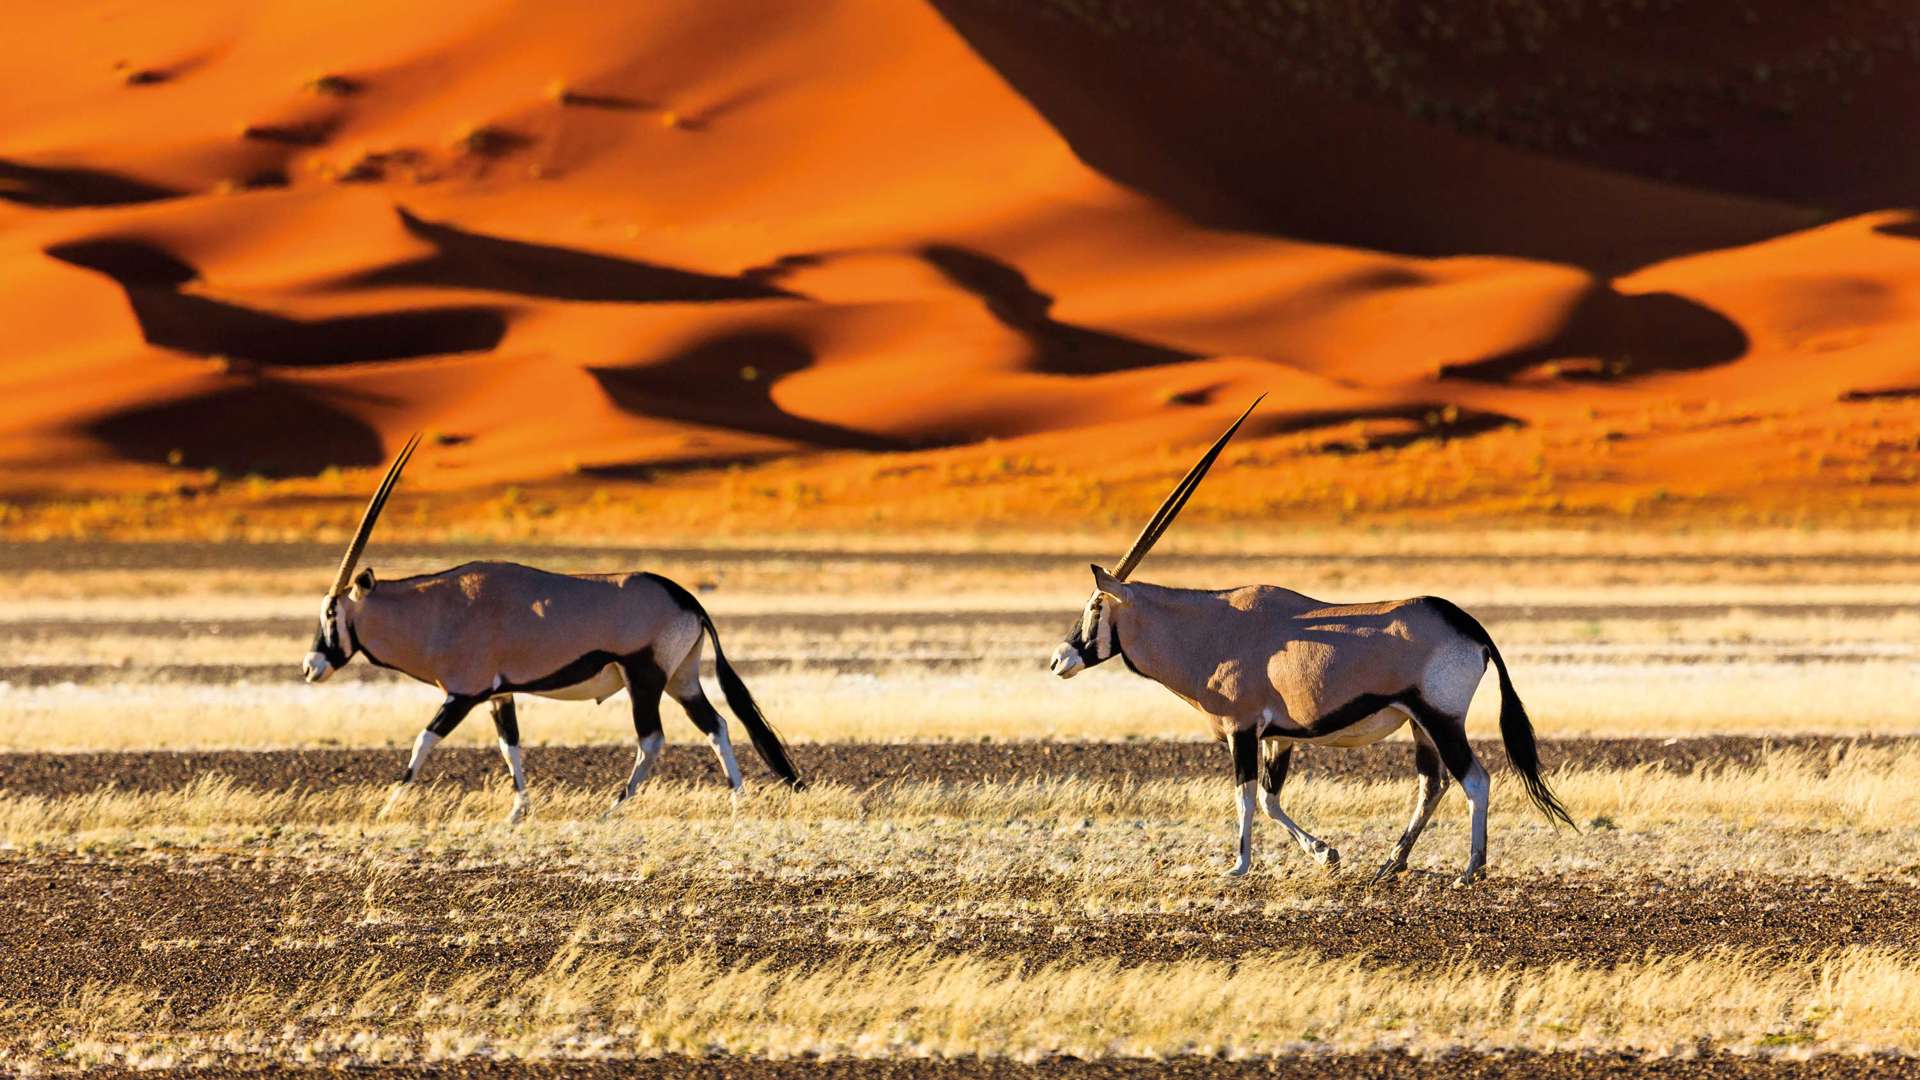 Oryx, Sossusvlei, Namibia